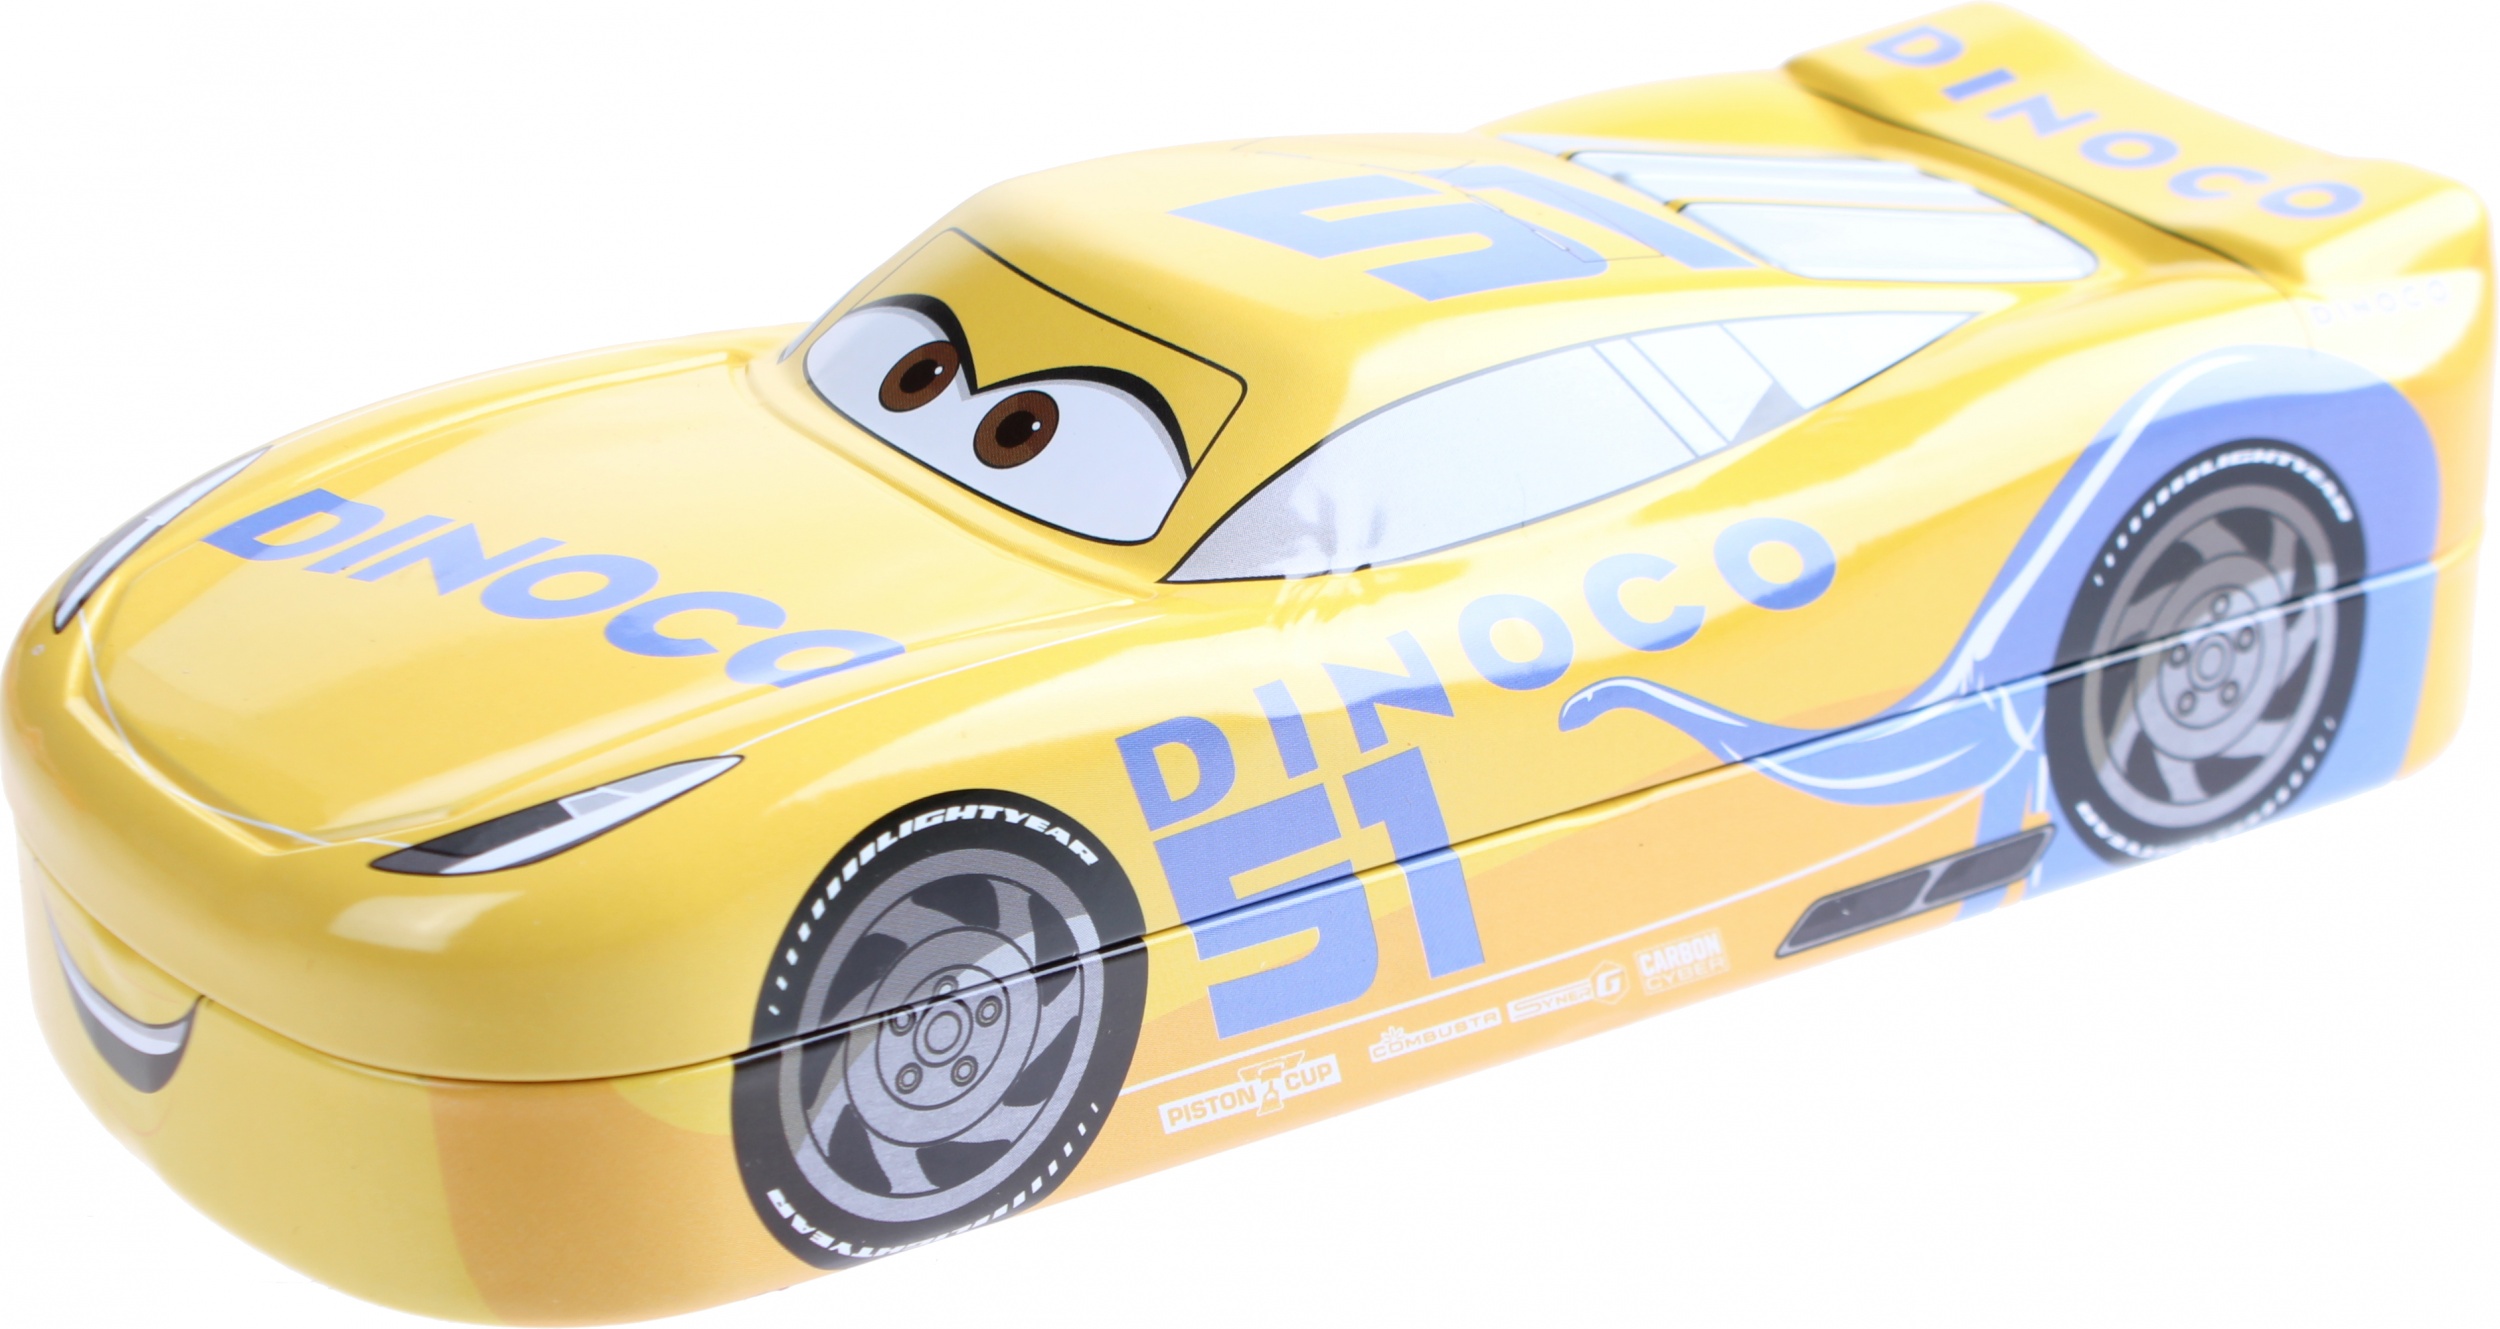 Kamparo federdose Disney Cars 3 20,5 x 9 x 5,5 cm gelb ...